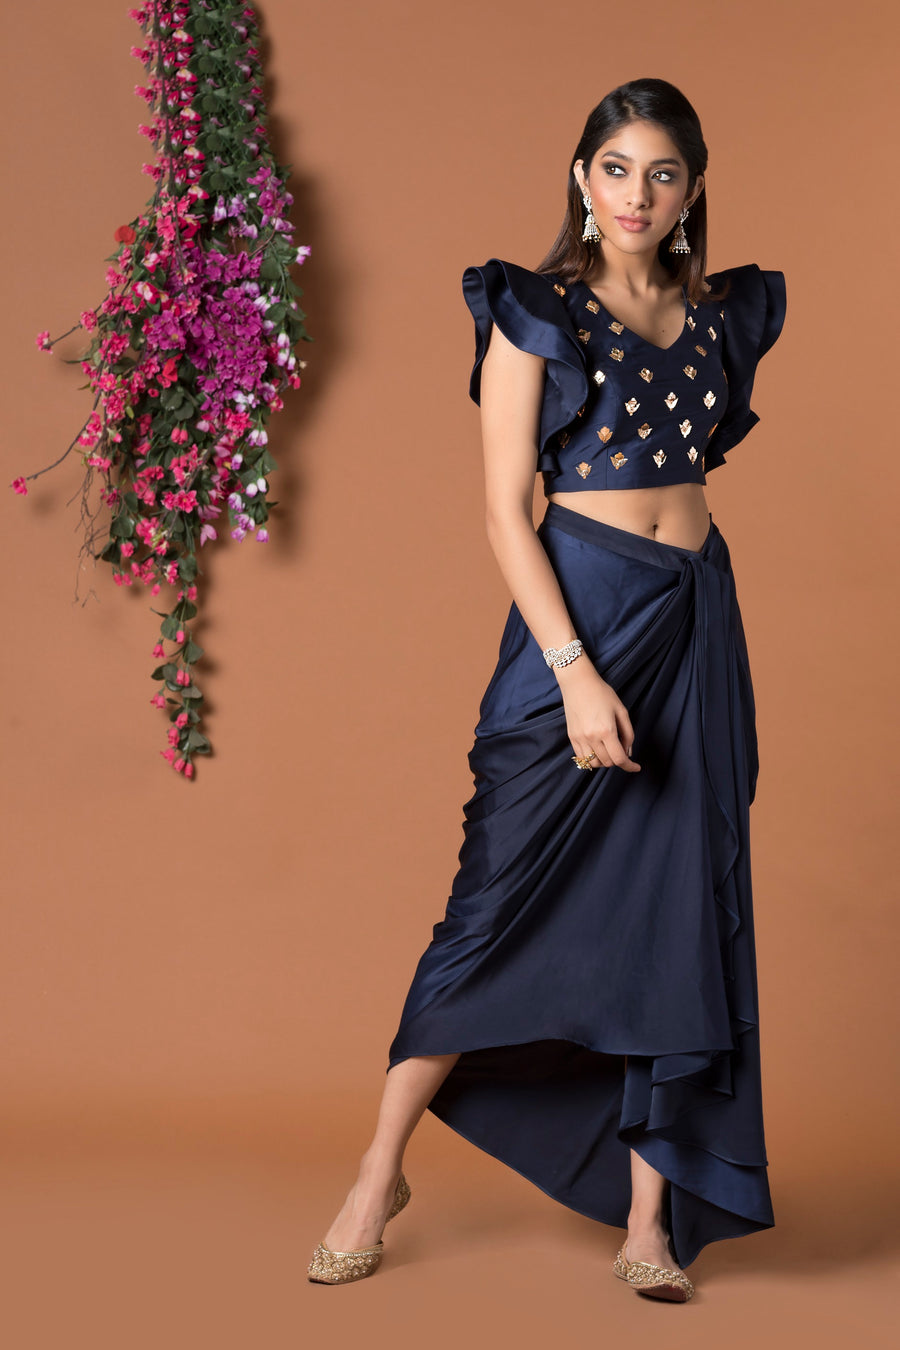 Mehak Murpana| Draped Skirt & Crop Top | Indian Wedding Wear for sangeet & mehndi.